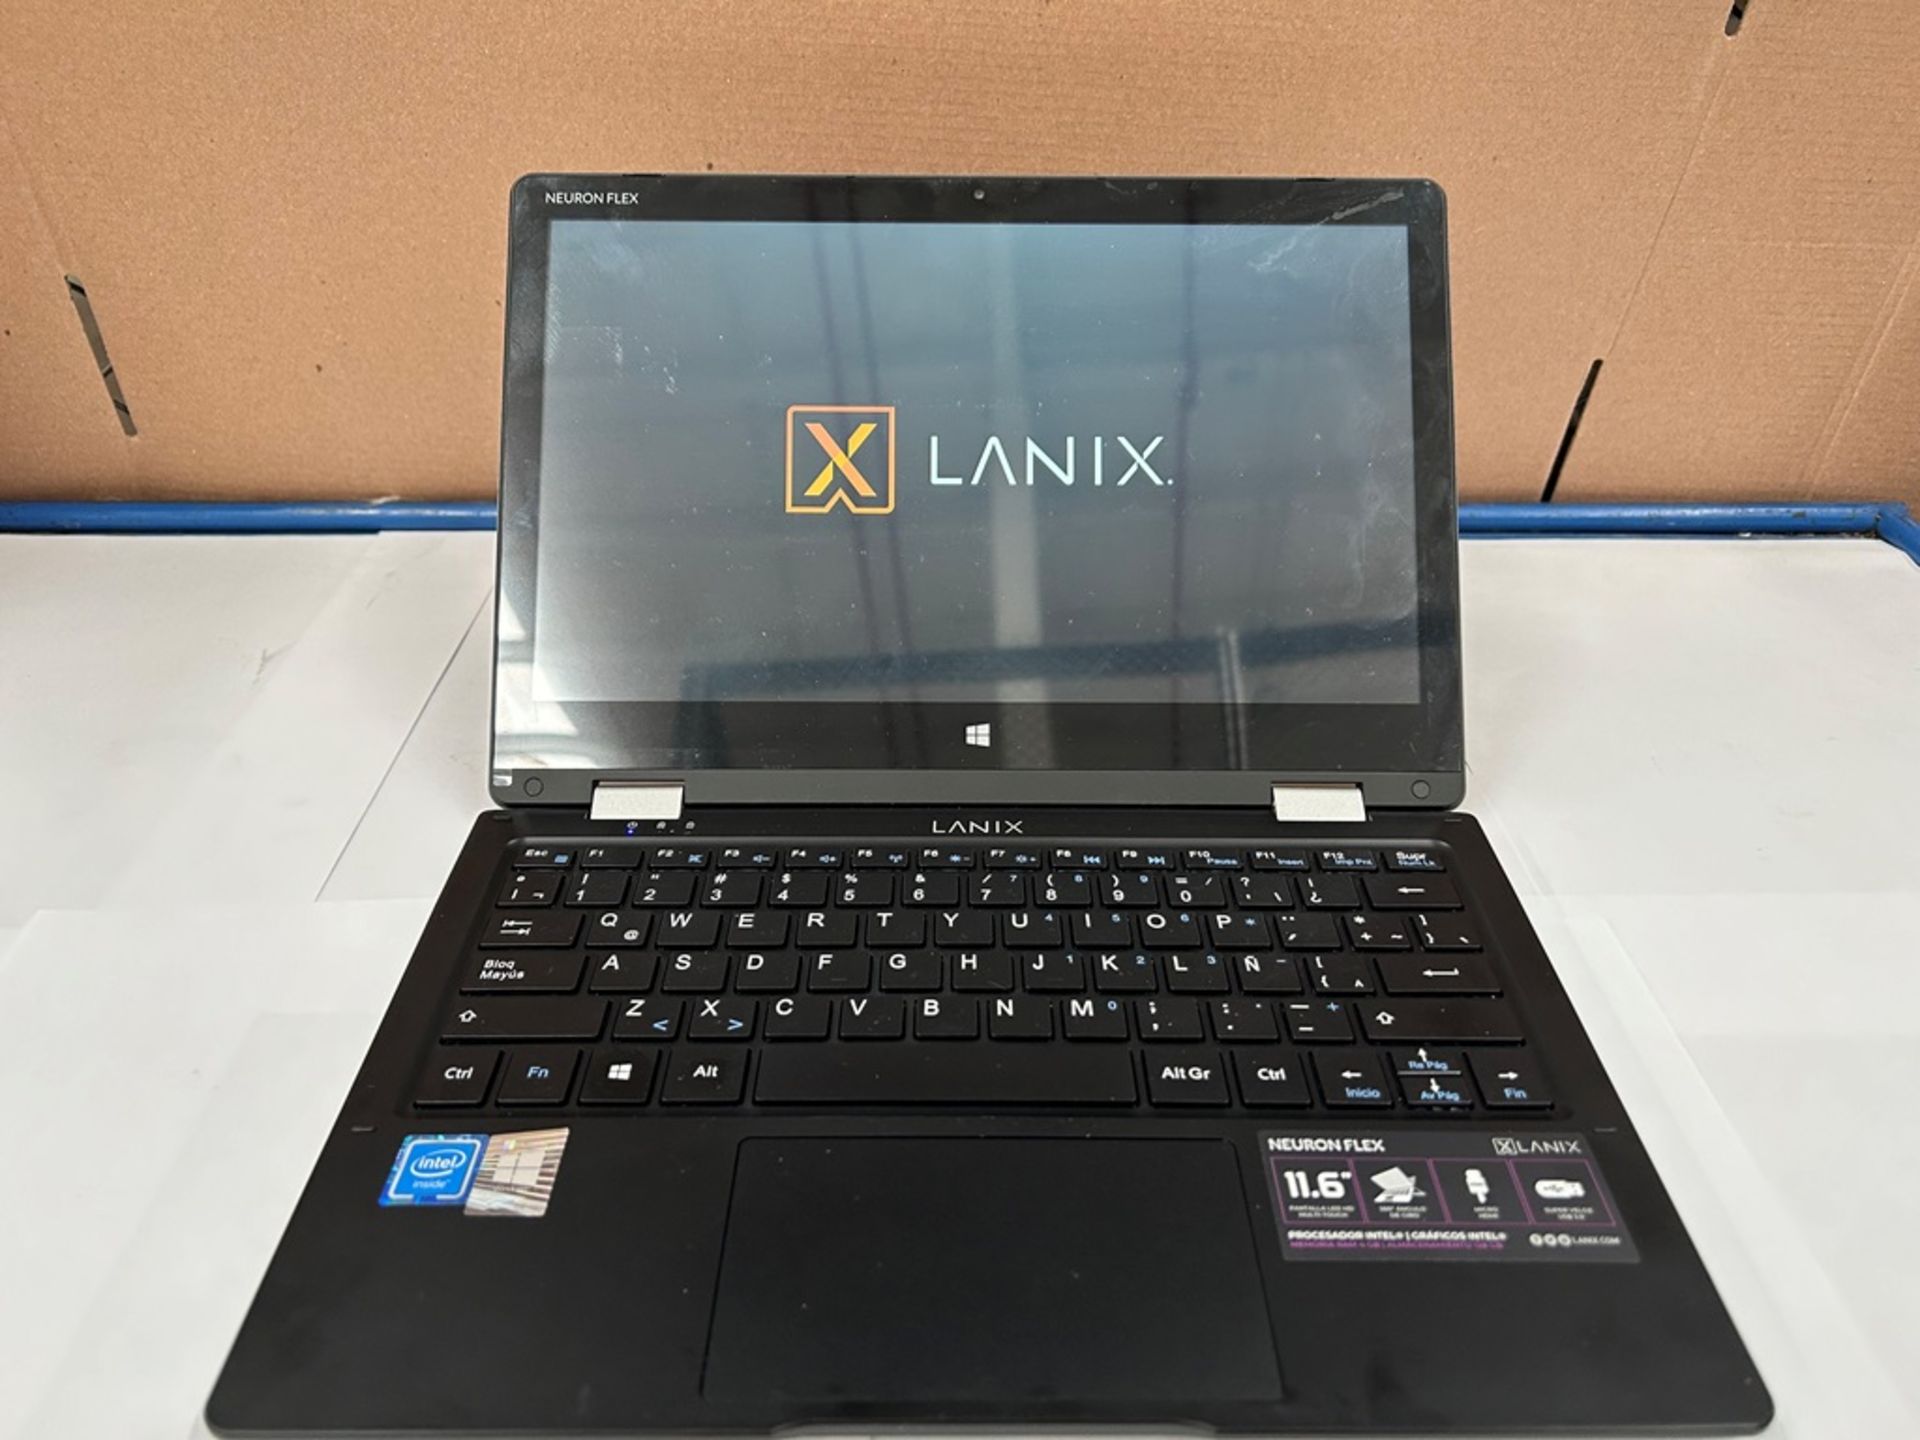 Laptop Marca LANIX, Modelo NEURONFLEX, con capacidad de 128 GB de almacenamiento, 4 GB de RAM (Equi - Image 4 of 8